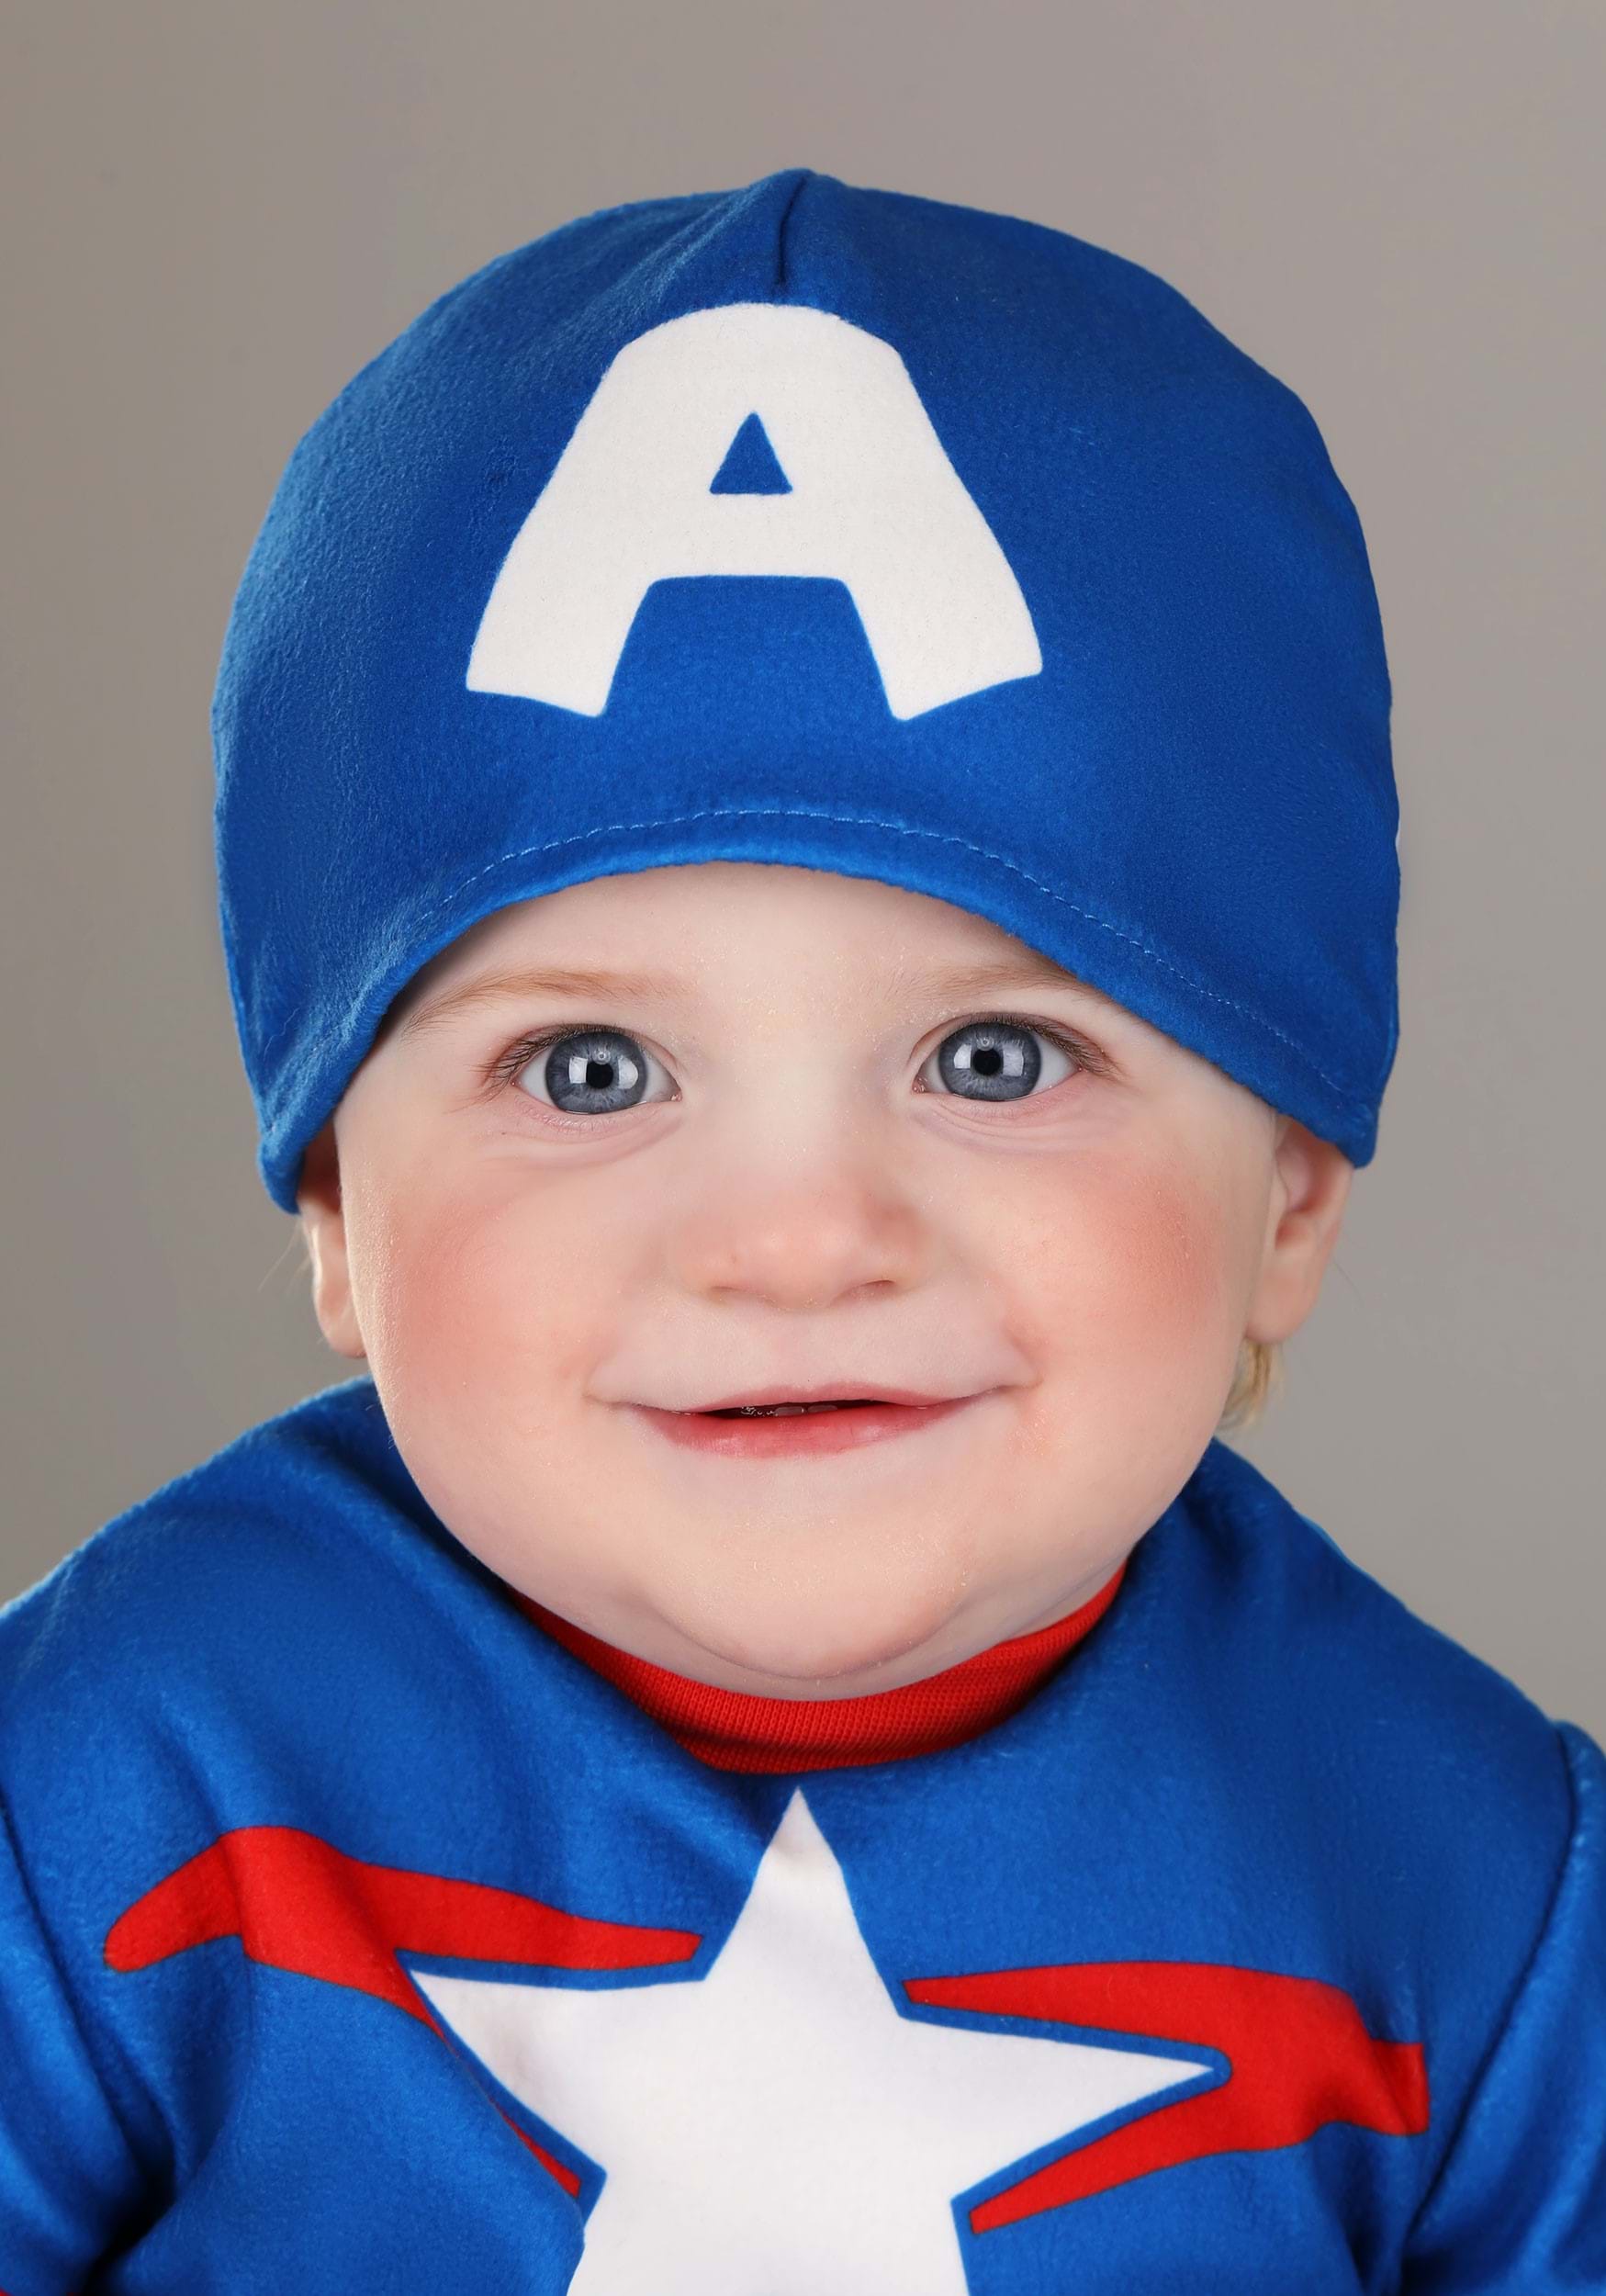 Captain America Steve Rogers Infant Costume